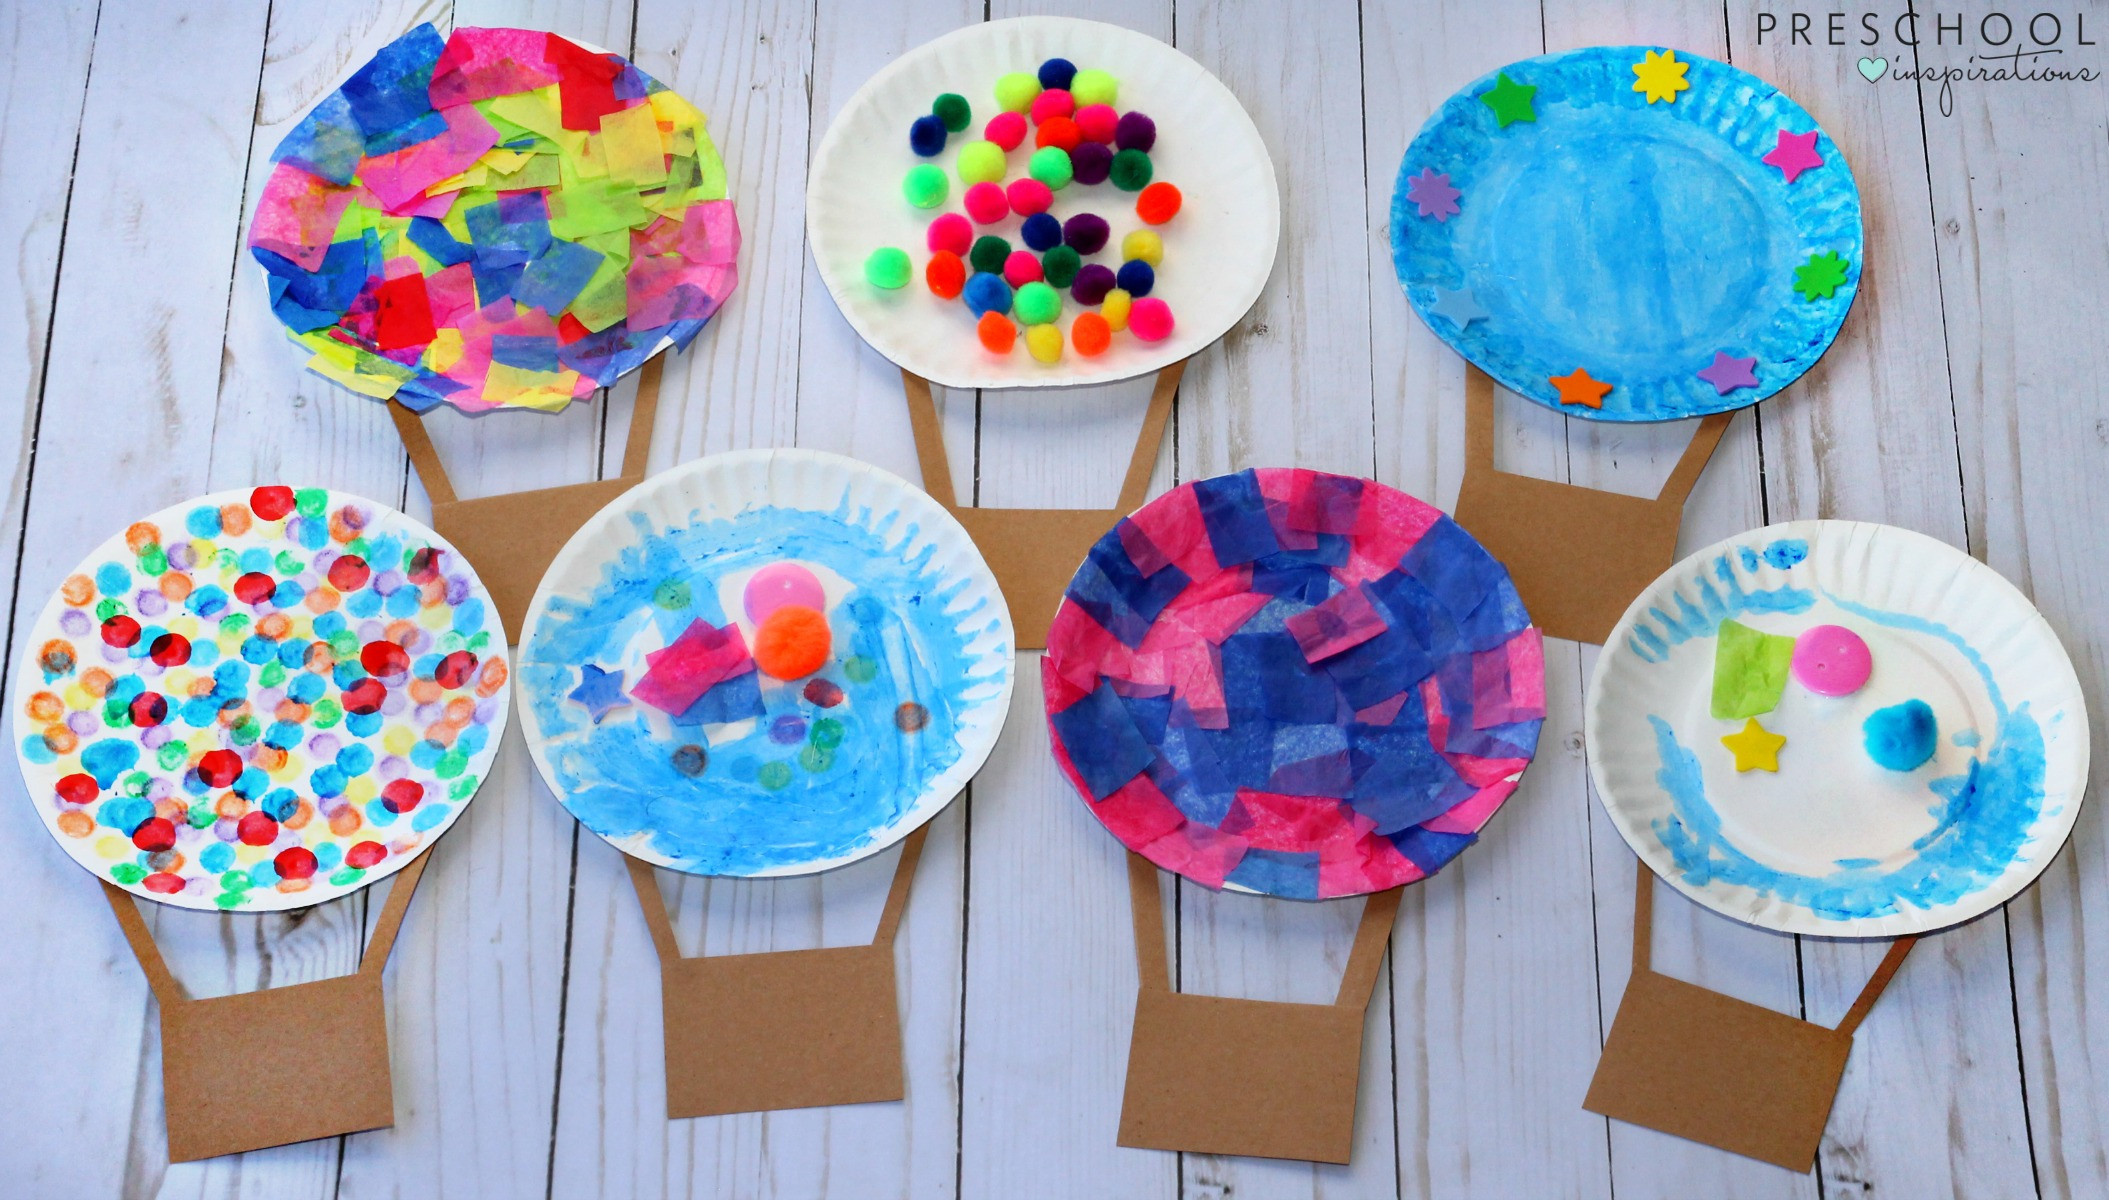 Craft Activities For Preschoolers
 Hot Air Balloon Art Activity Preschool Inspirations